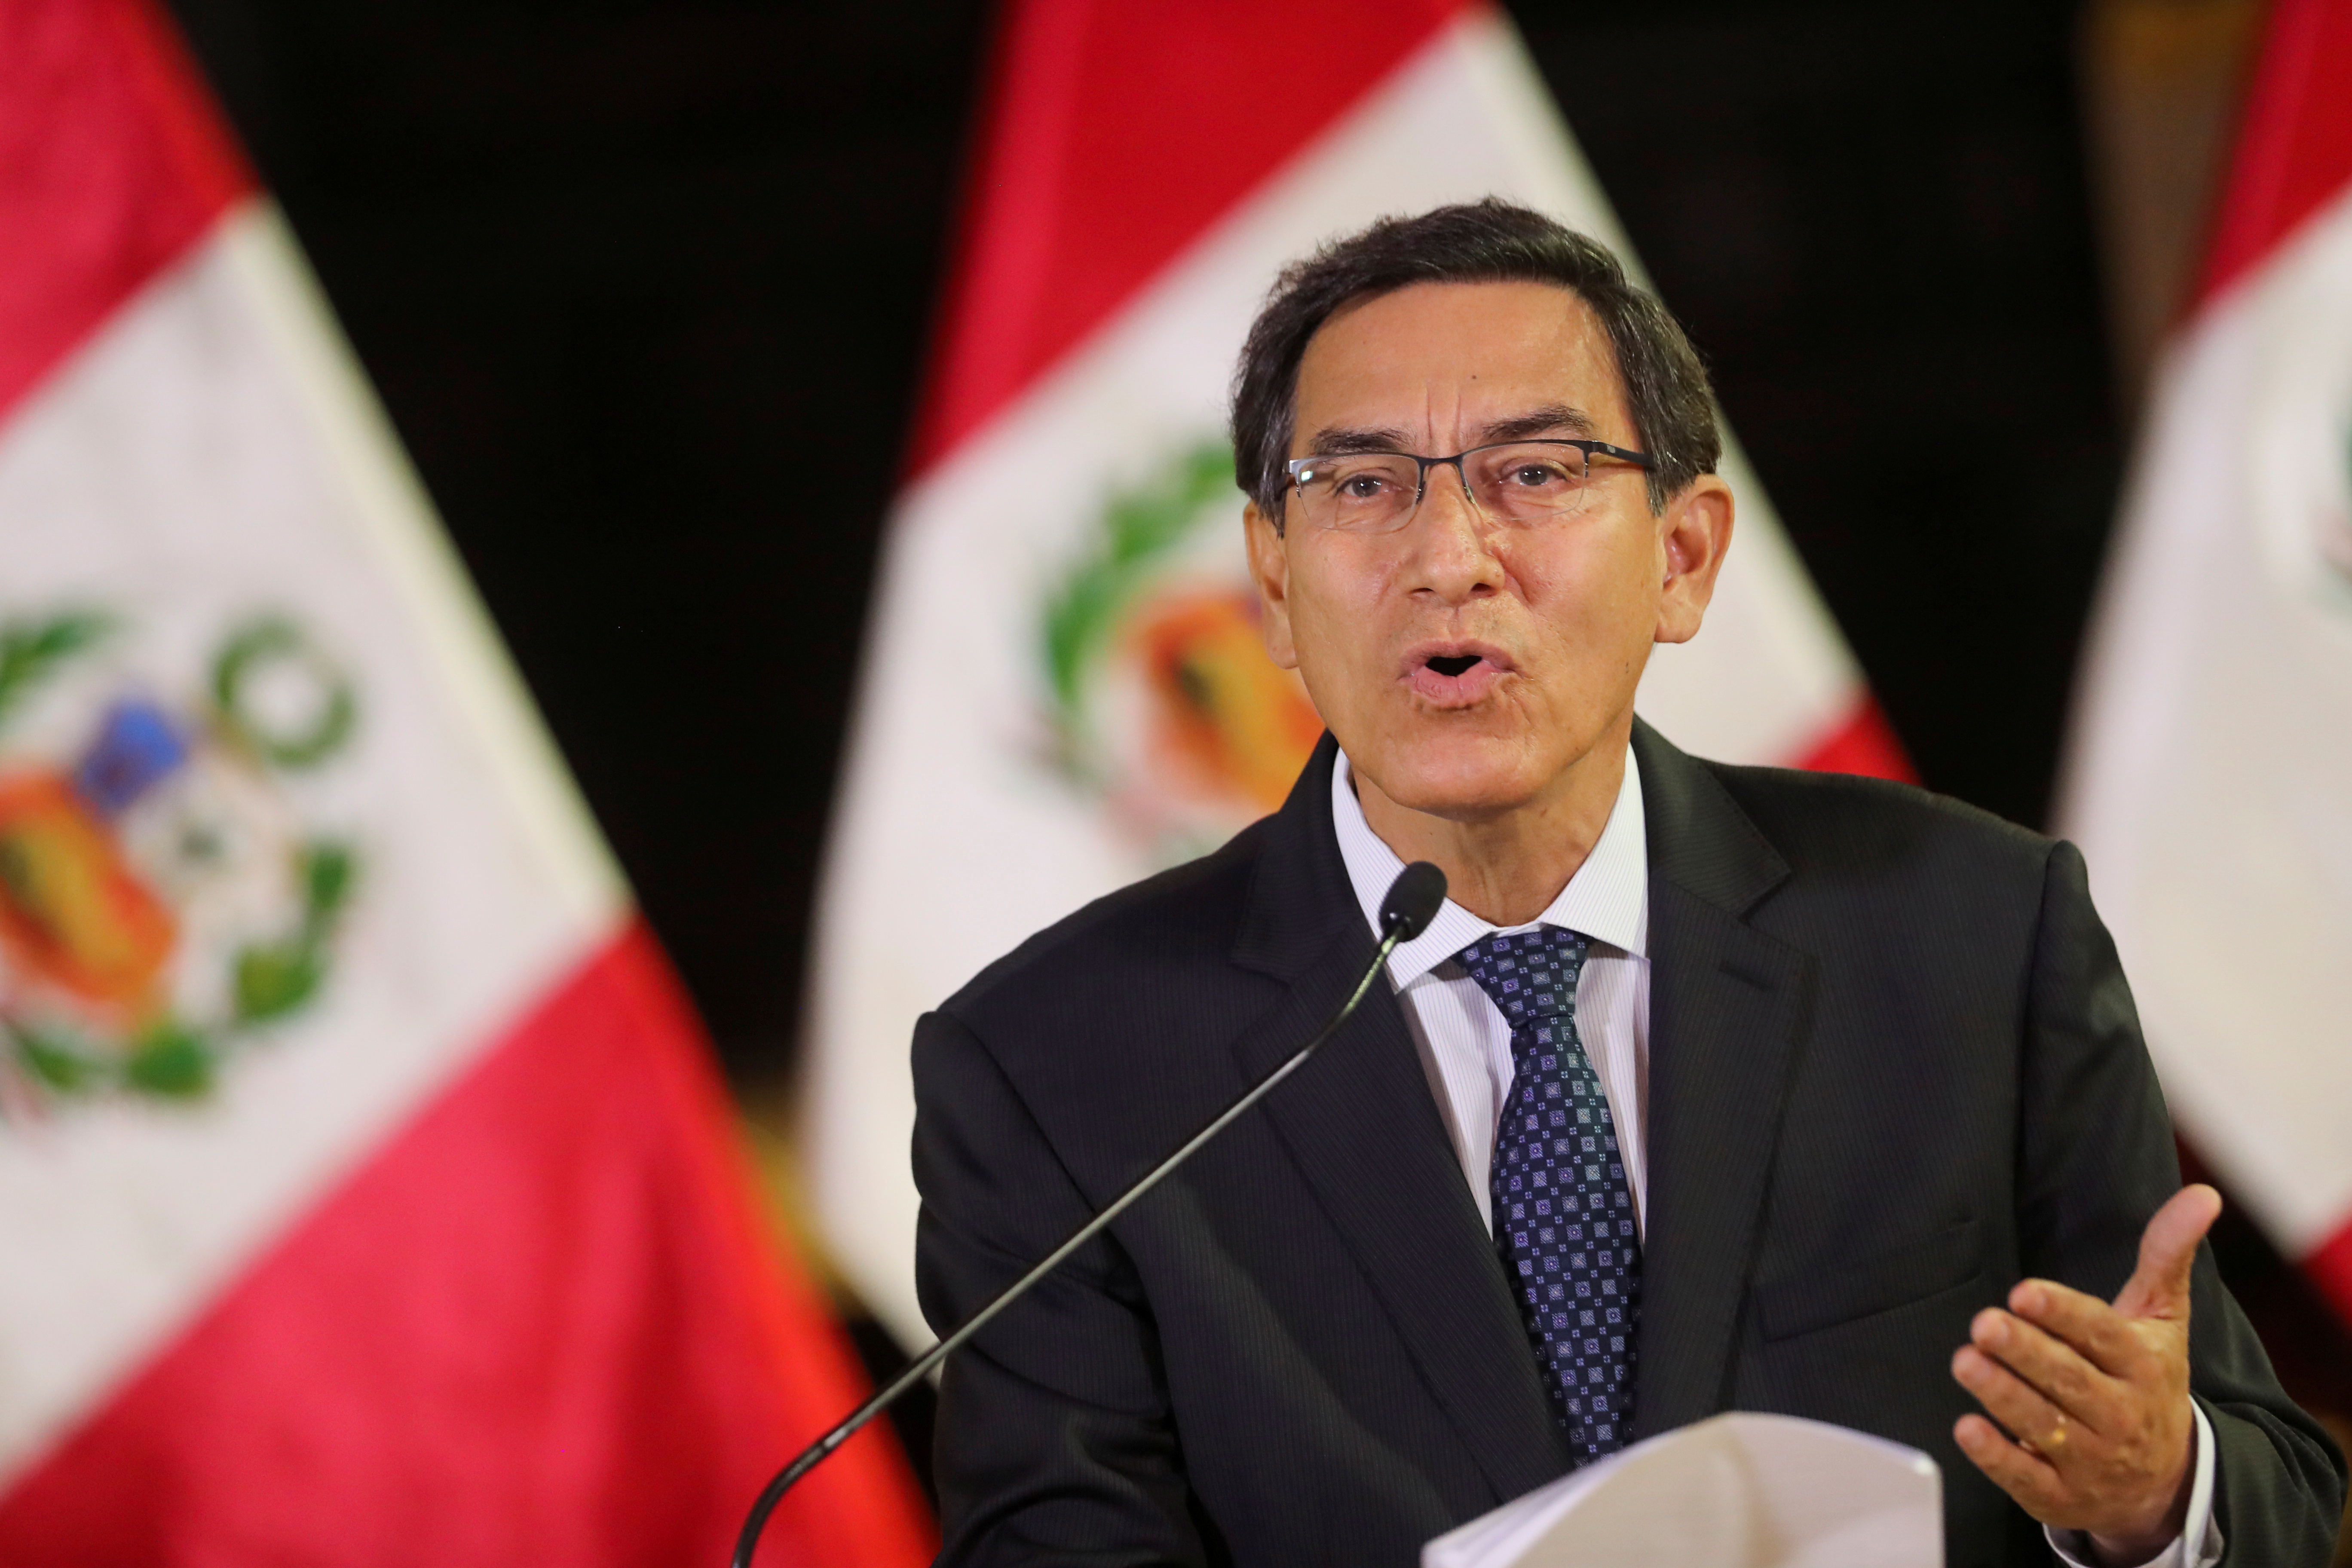 “Me voy con la conciencia tranquila”, afirmó Vizcarra tras ser destituido por el Congreso peruano